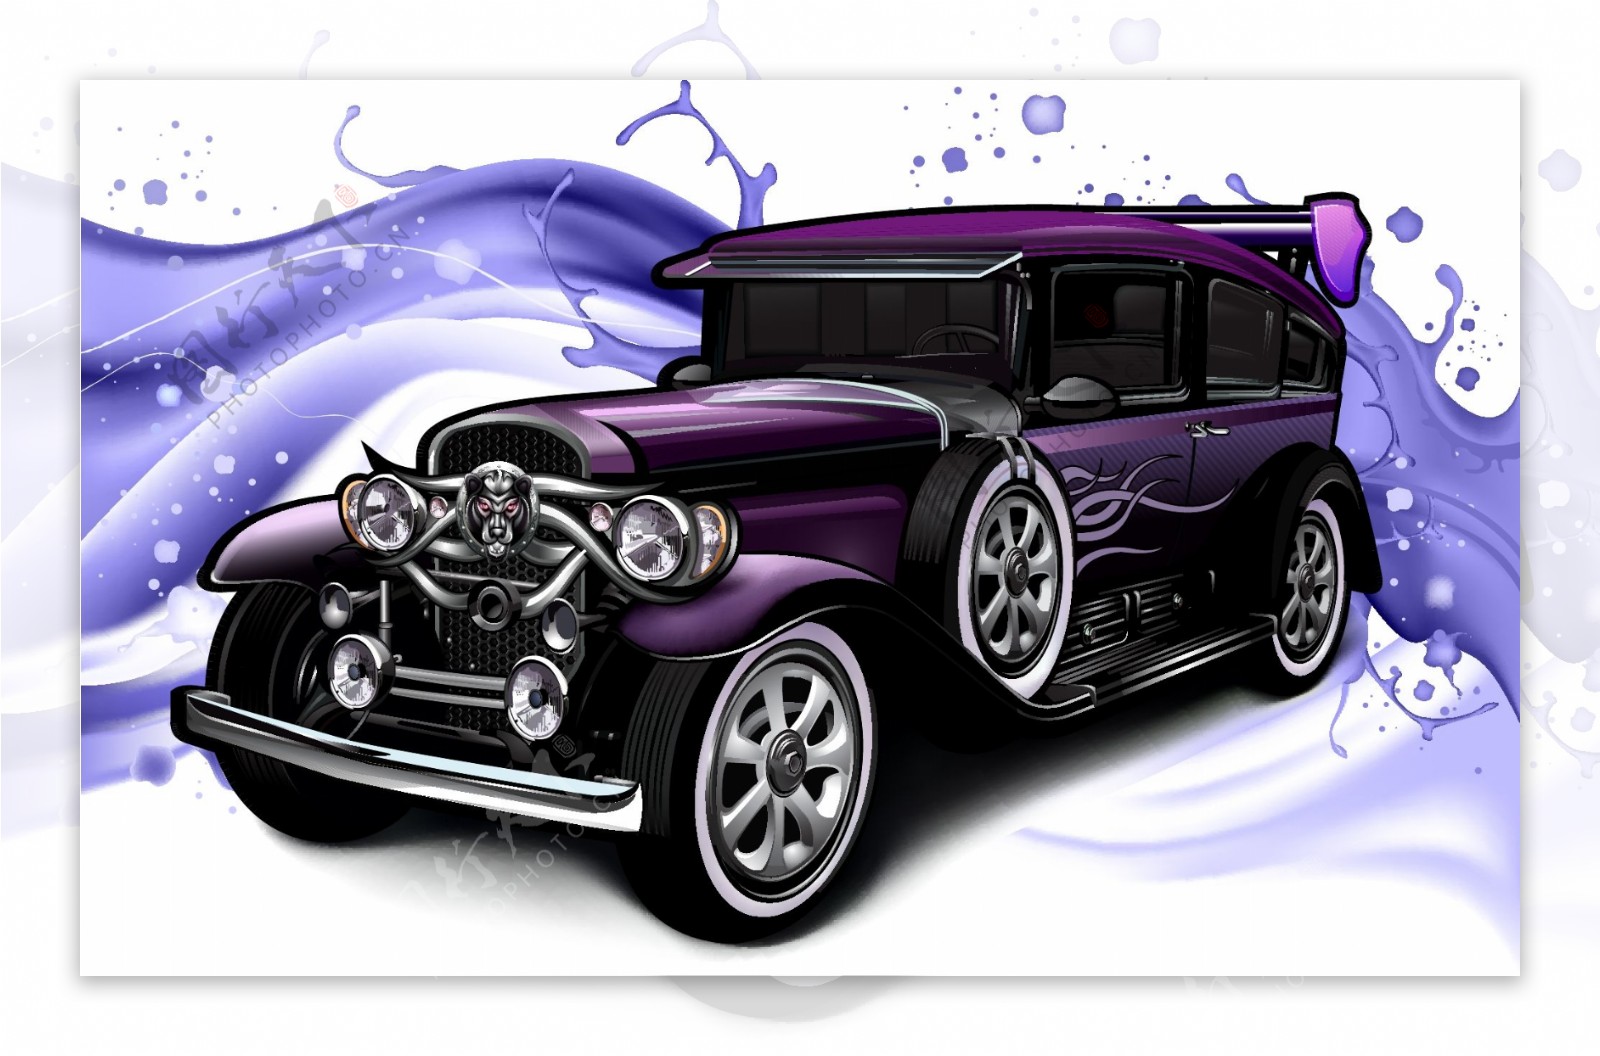 紫色泼墨插画老爷车